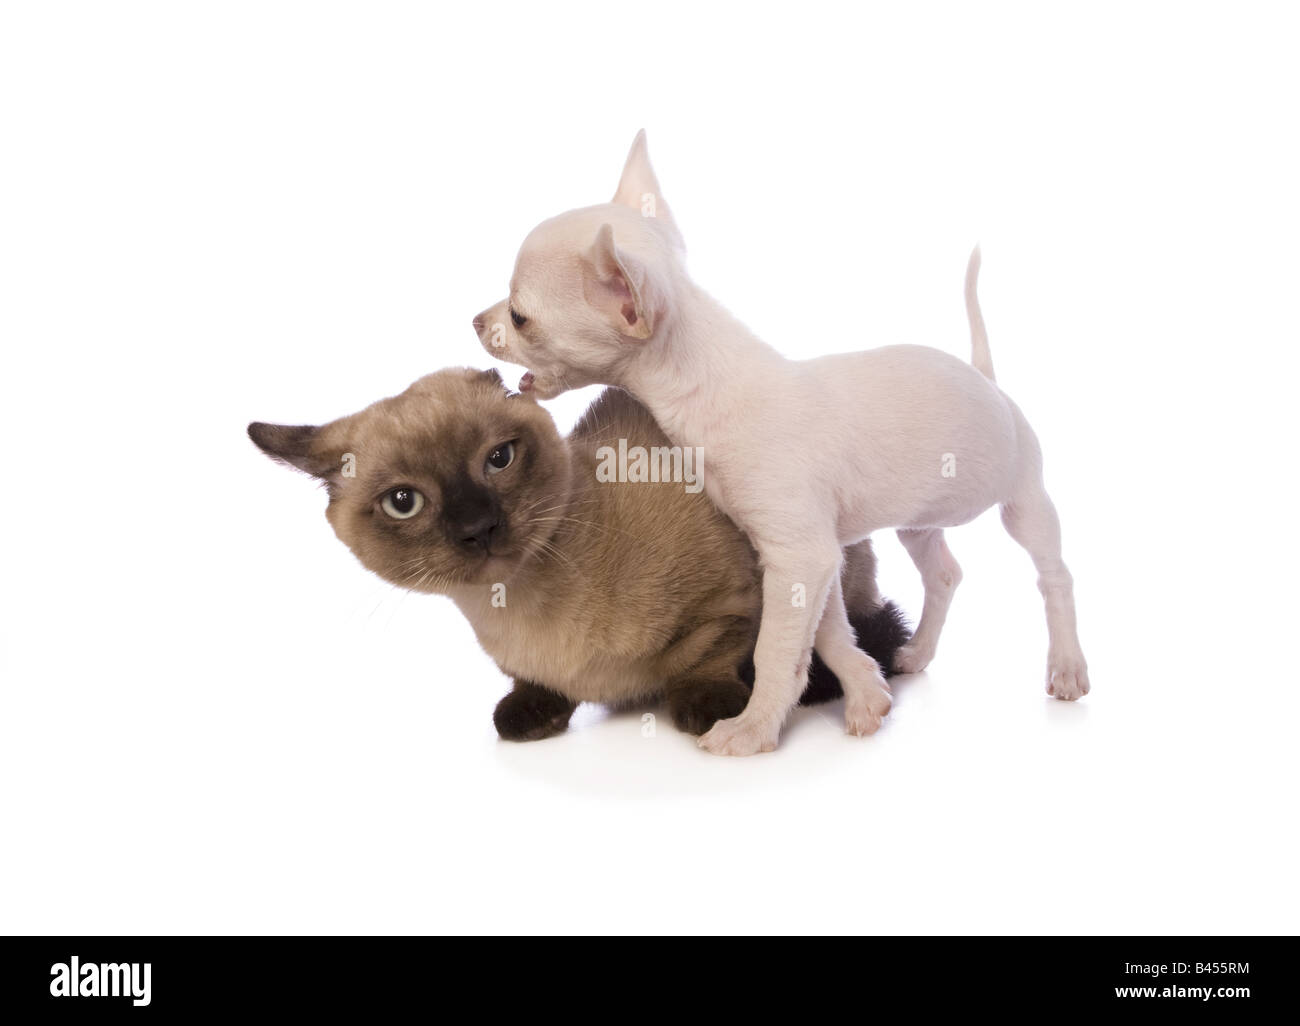 Couleur crème mignon chiot Chihuahua poil jouer avec chaton Munchkin isolé sur fond blanc Banque D'Images